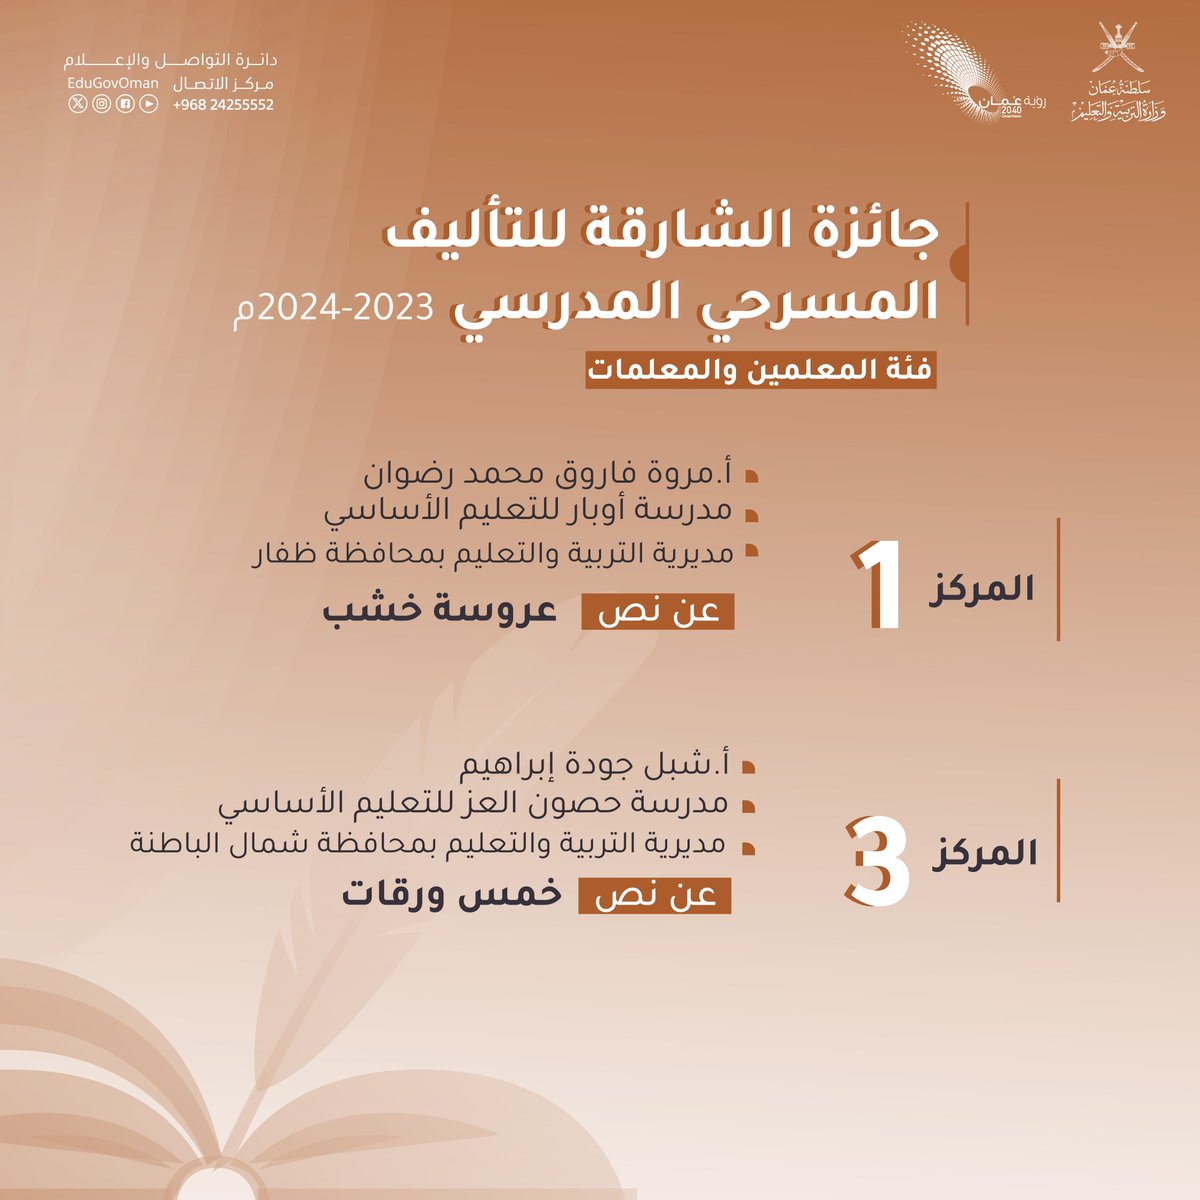 #التربية_والتعليم | جائزة الشارقة للتأليف المسرحي المدرسي ٢٠٢٣-٢٠٢٤م #تعلم_مستدام